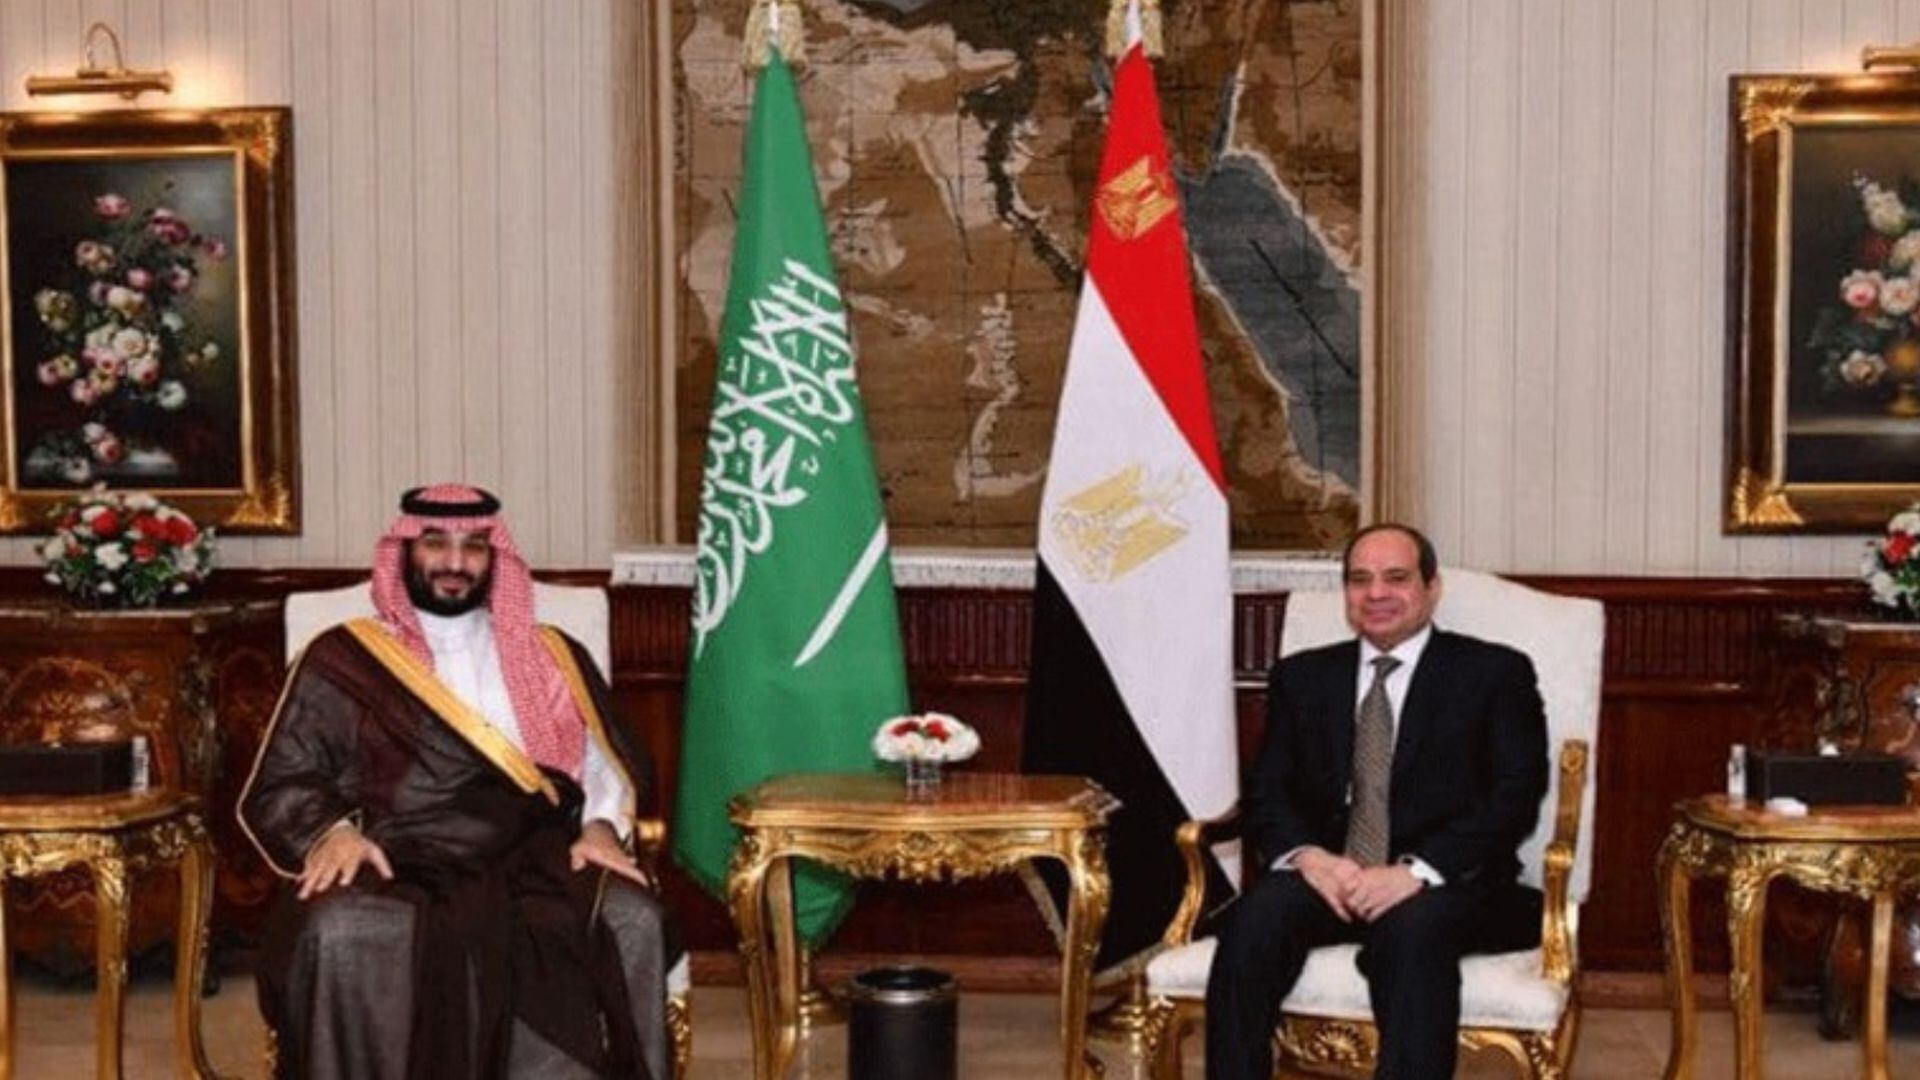 Básicamente es un trato cerrado': Fuentes afirman que Arabia